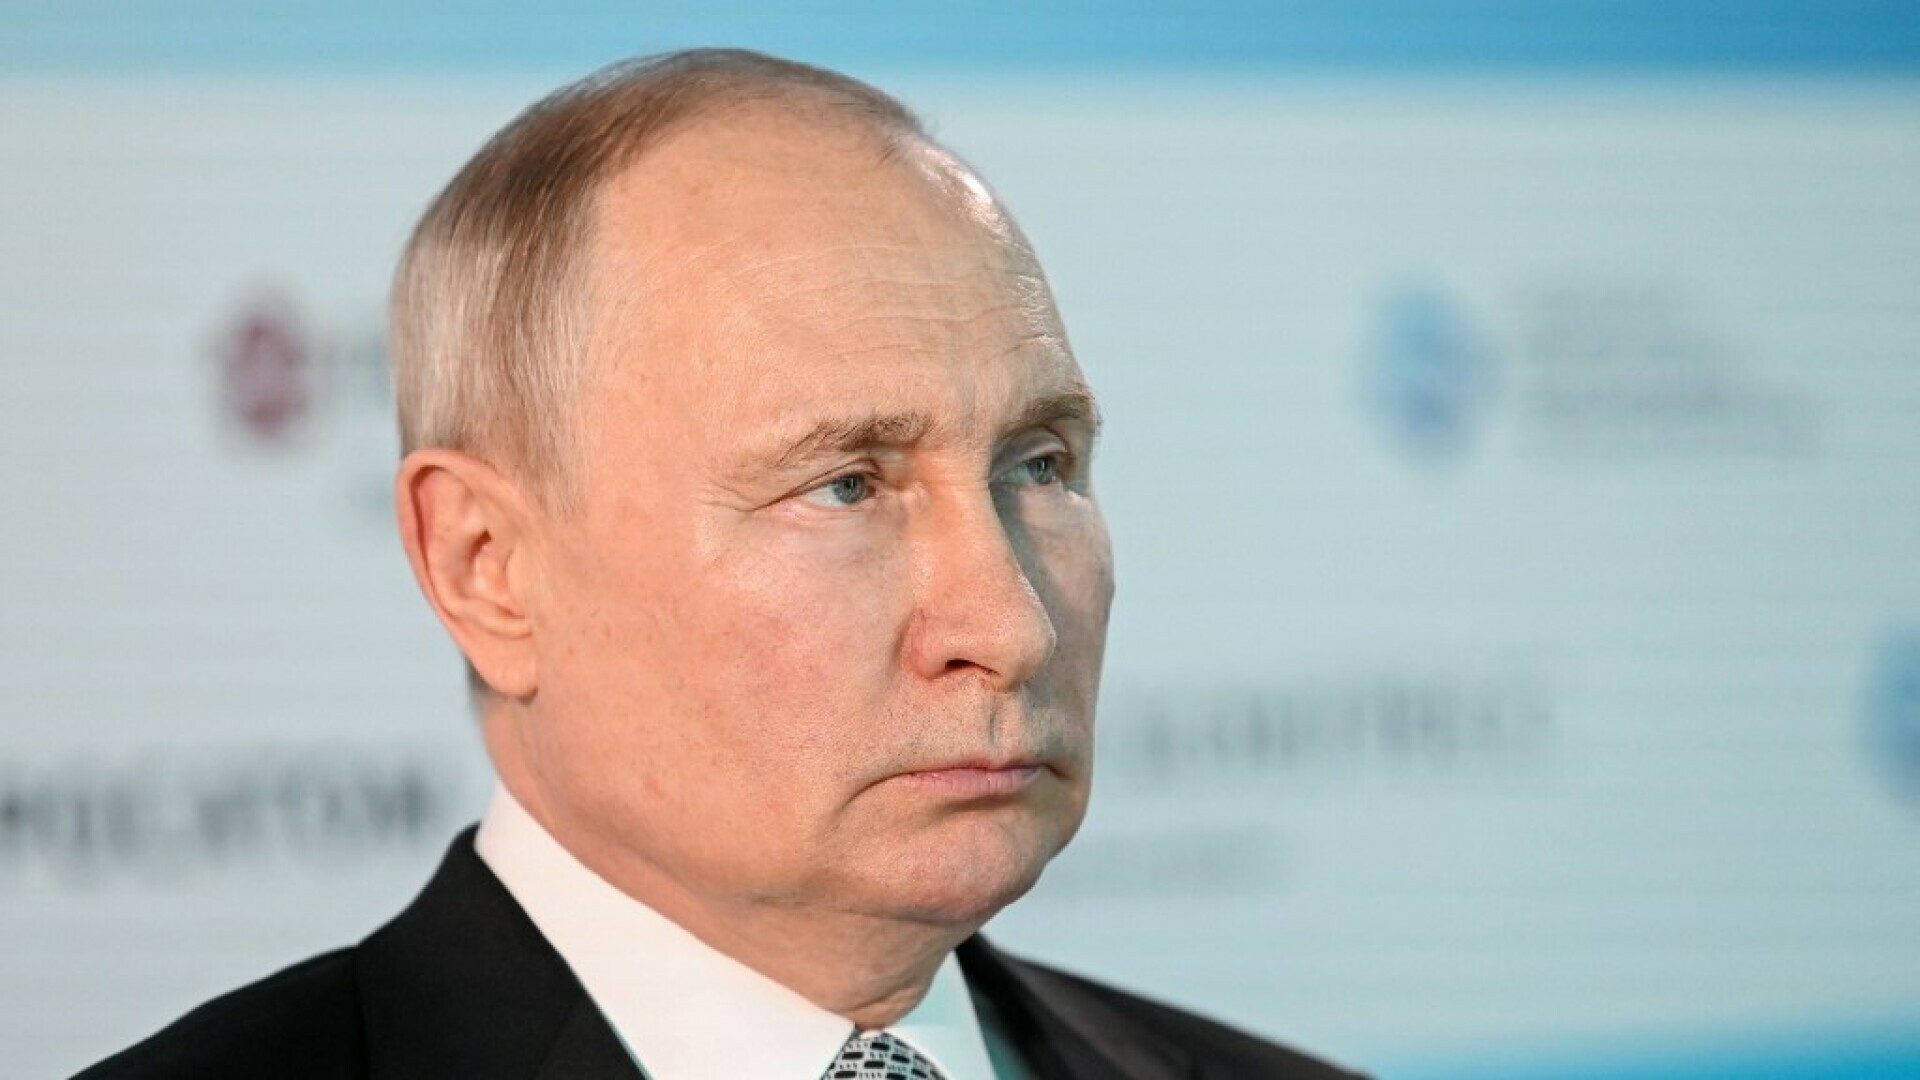 Putin se oglasio o mirovnim pregovorima s Ukrajinom, brani gušenje sloboda u Rusiji